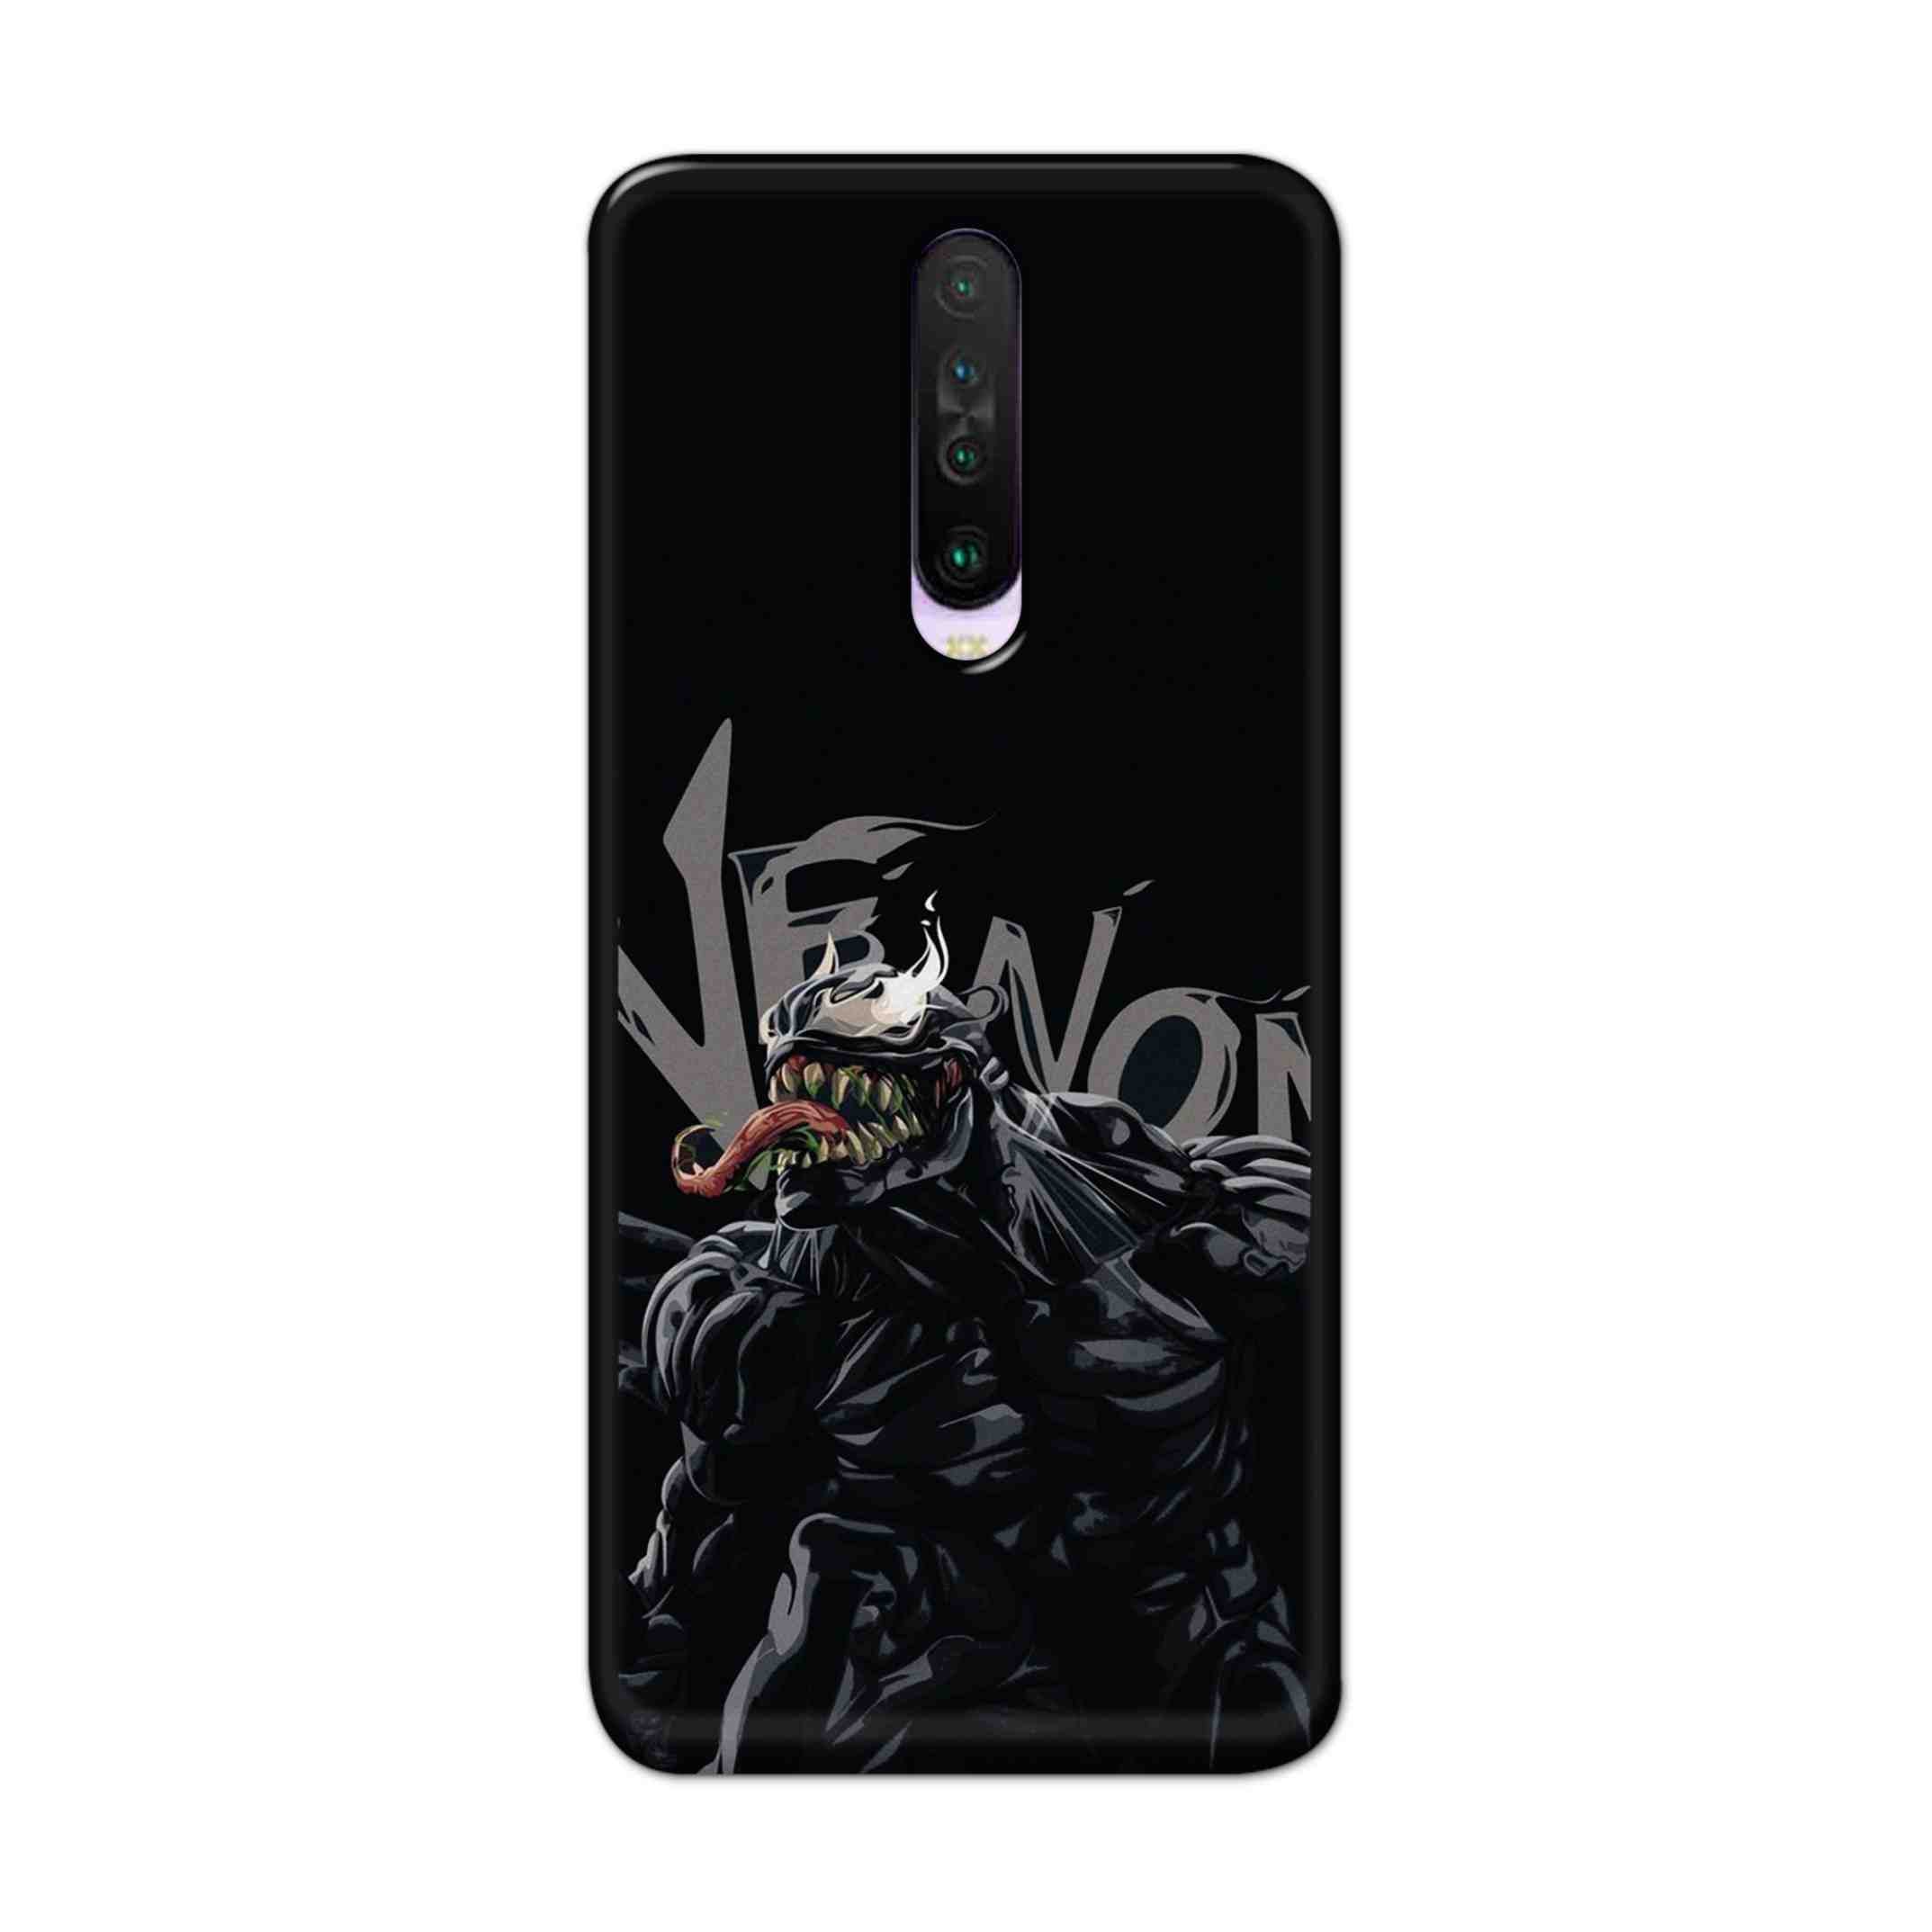 Buy  Venom Hard Back Mobile Phone Case Cover For Poco X2 Online